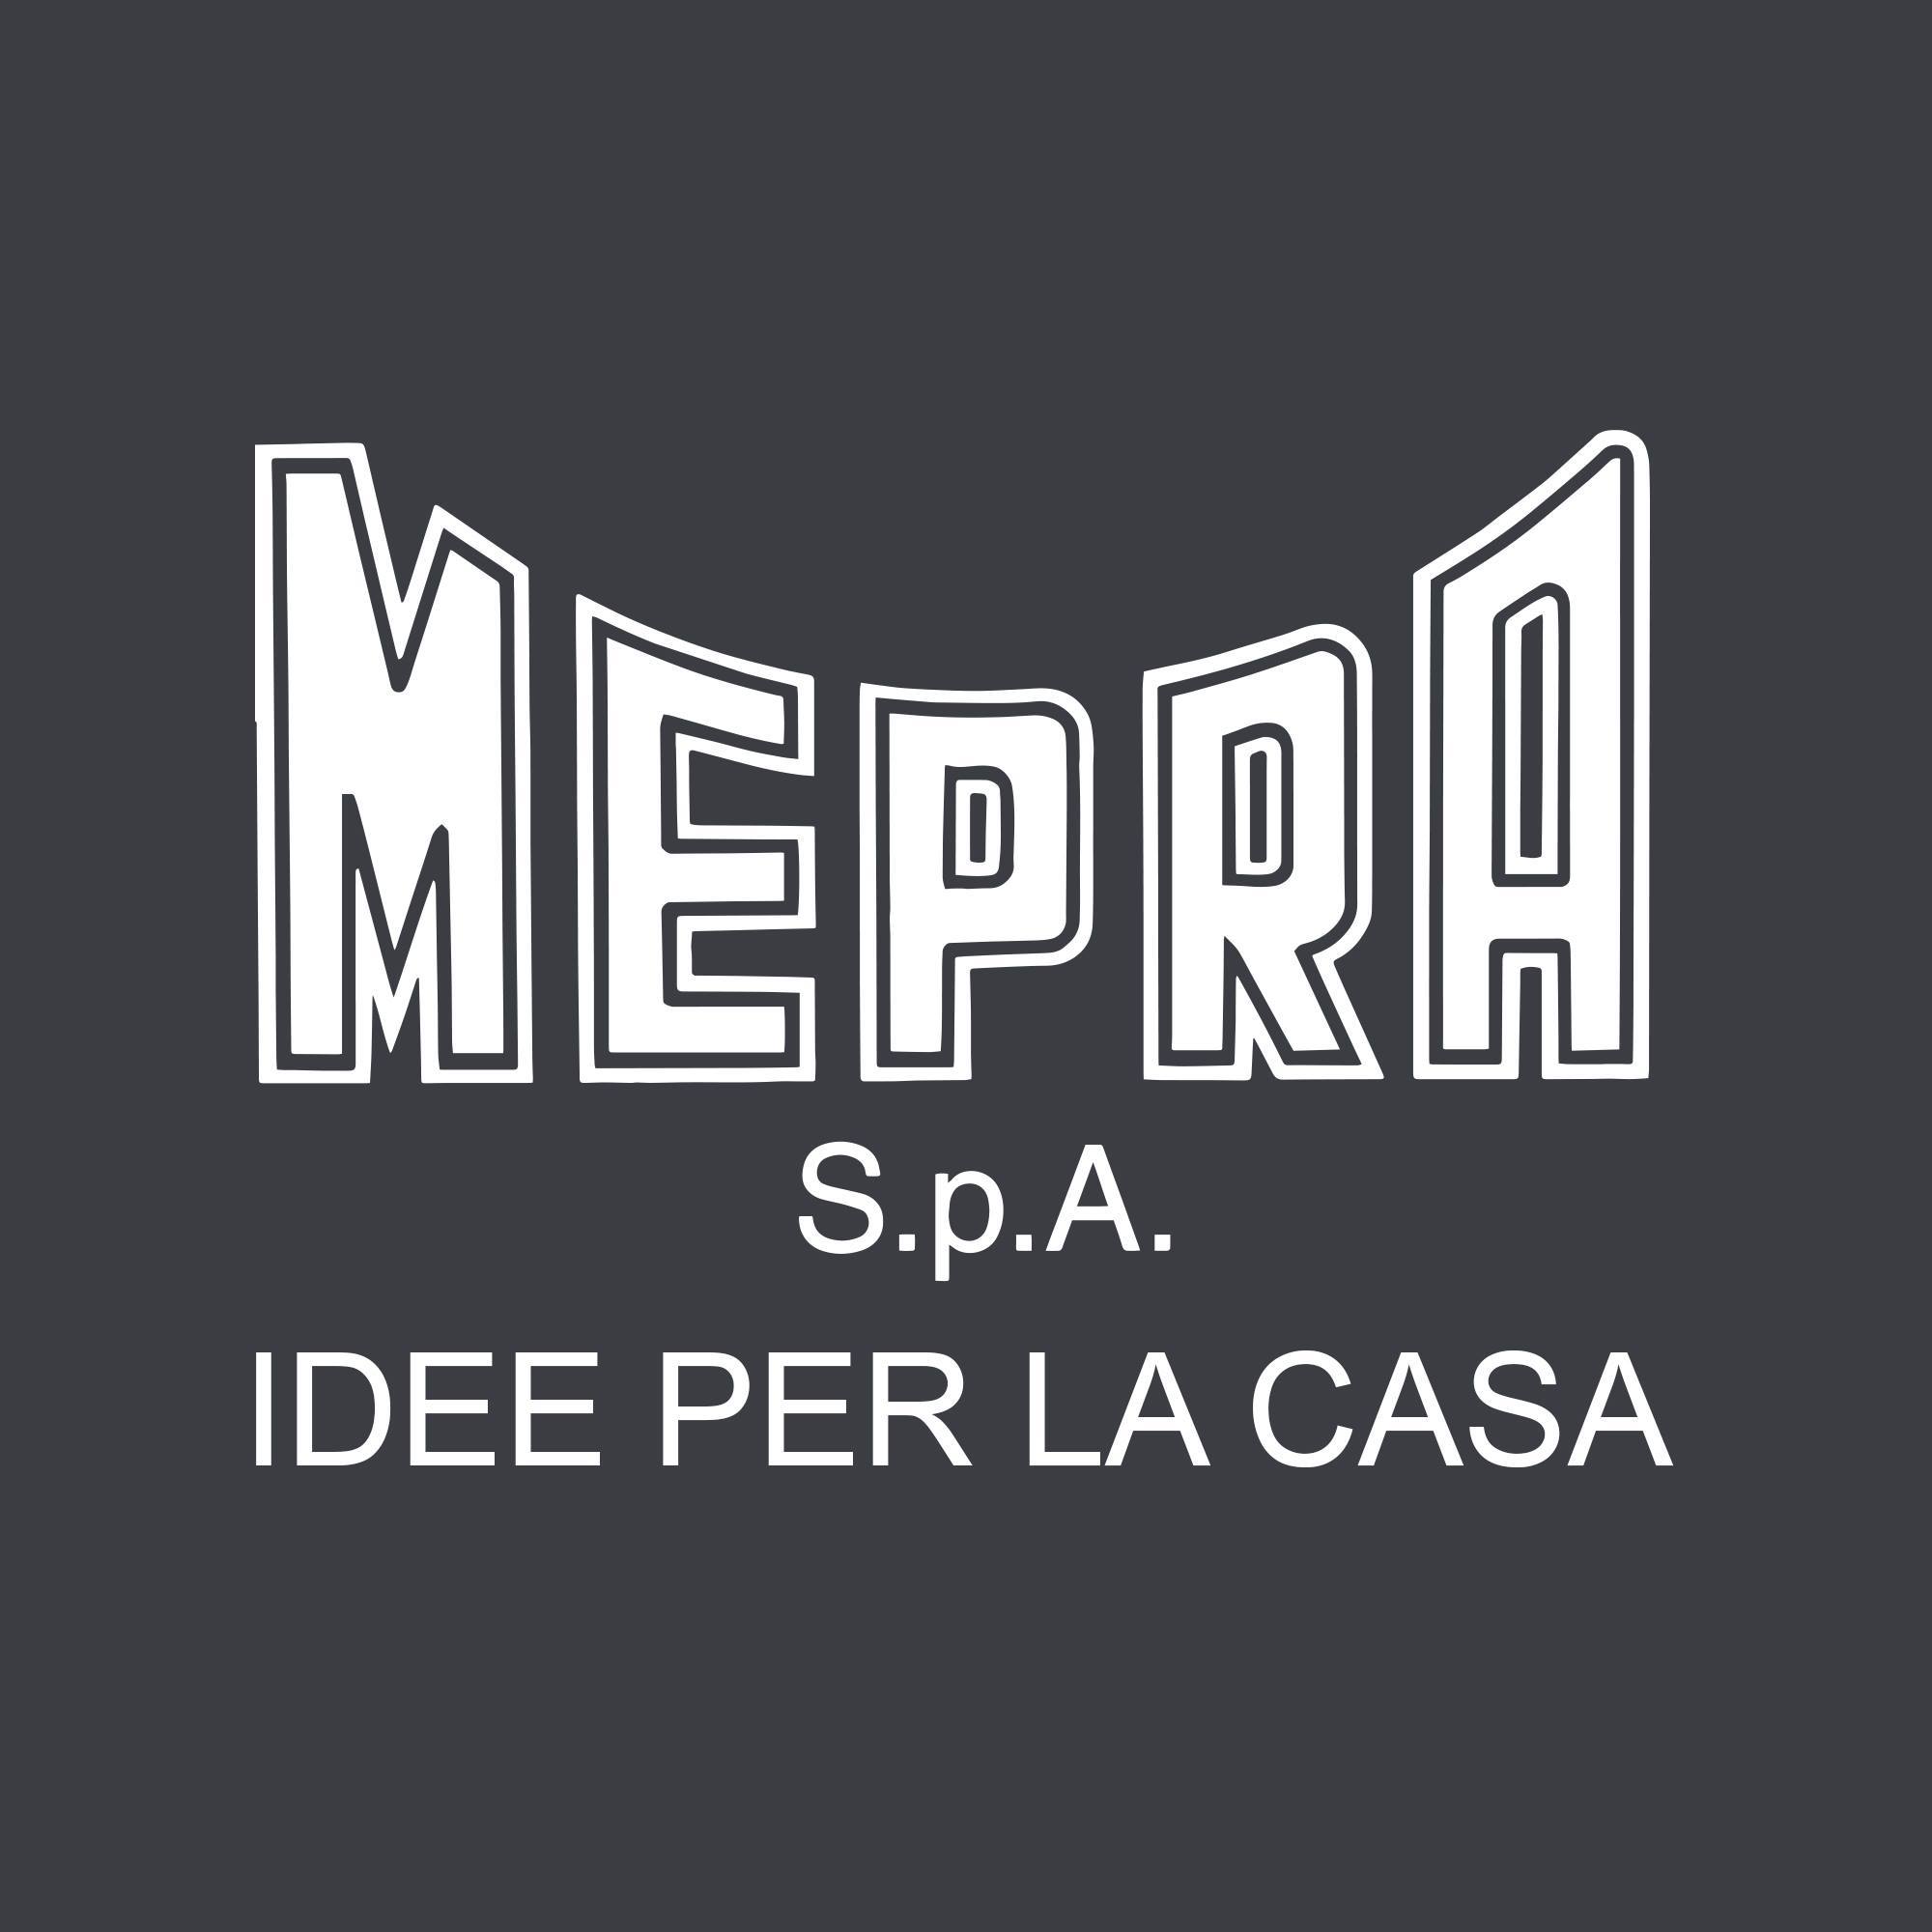 MEPRA S.p.A.